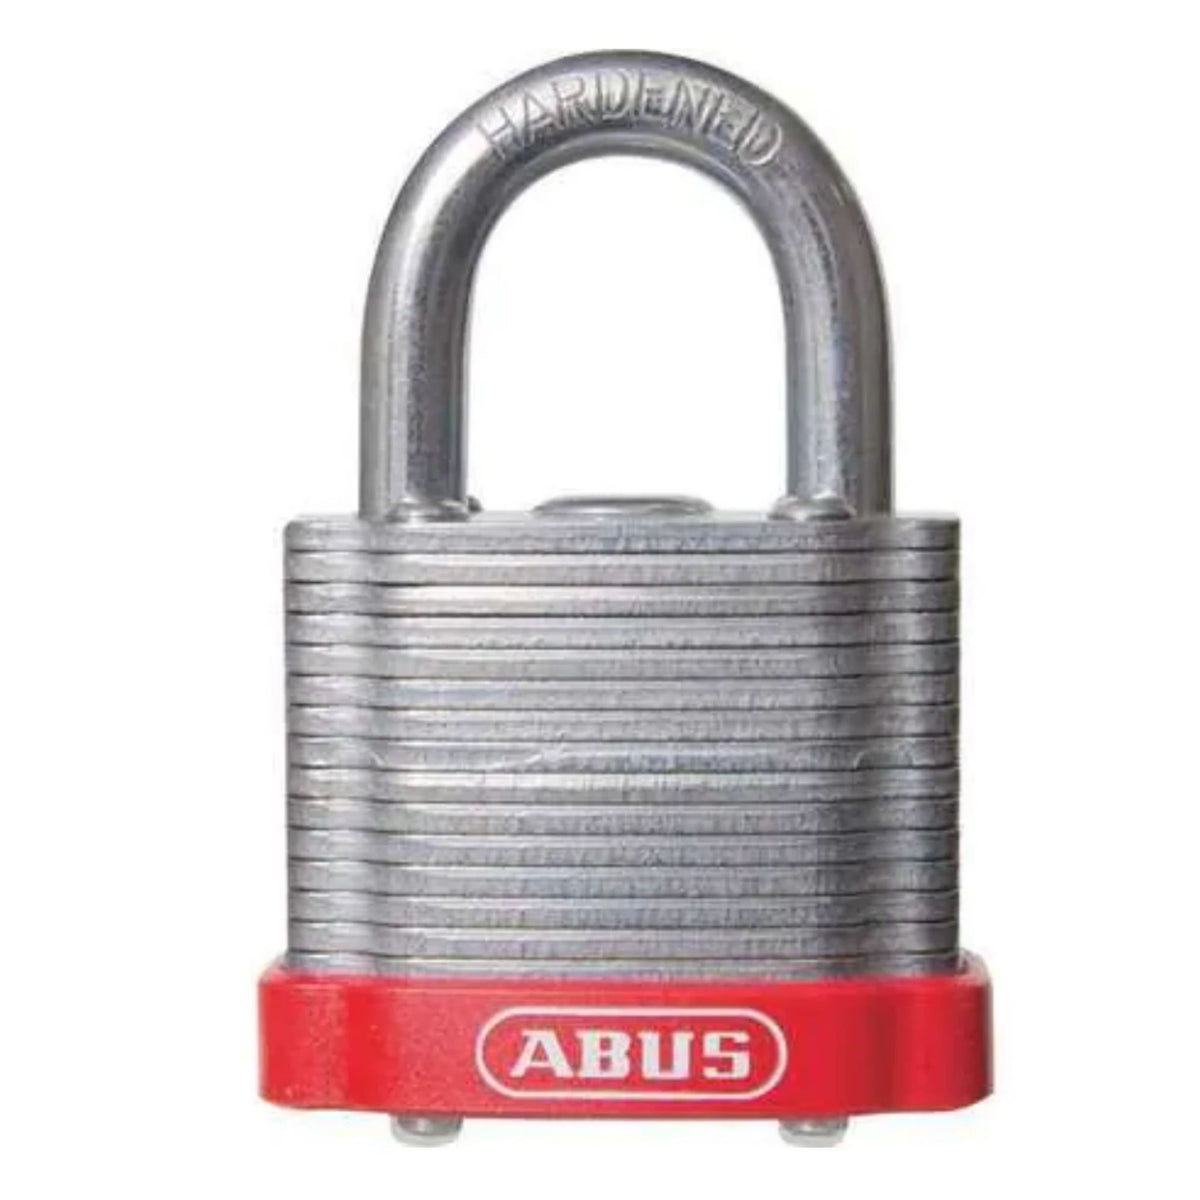 Abus 41/40 Red Lock Laminated Steel Padlocks Keyed Alike (4140 KA), KD or MK Locks - The Lock Source